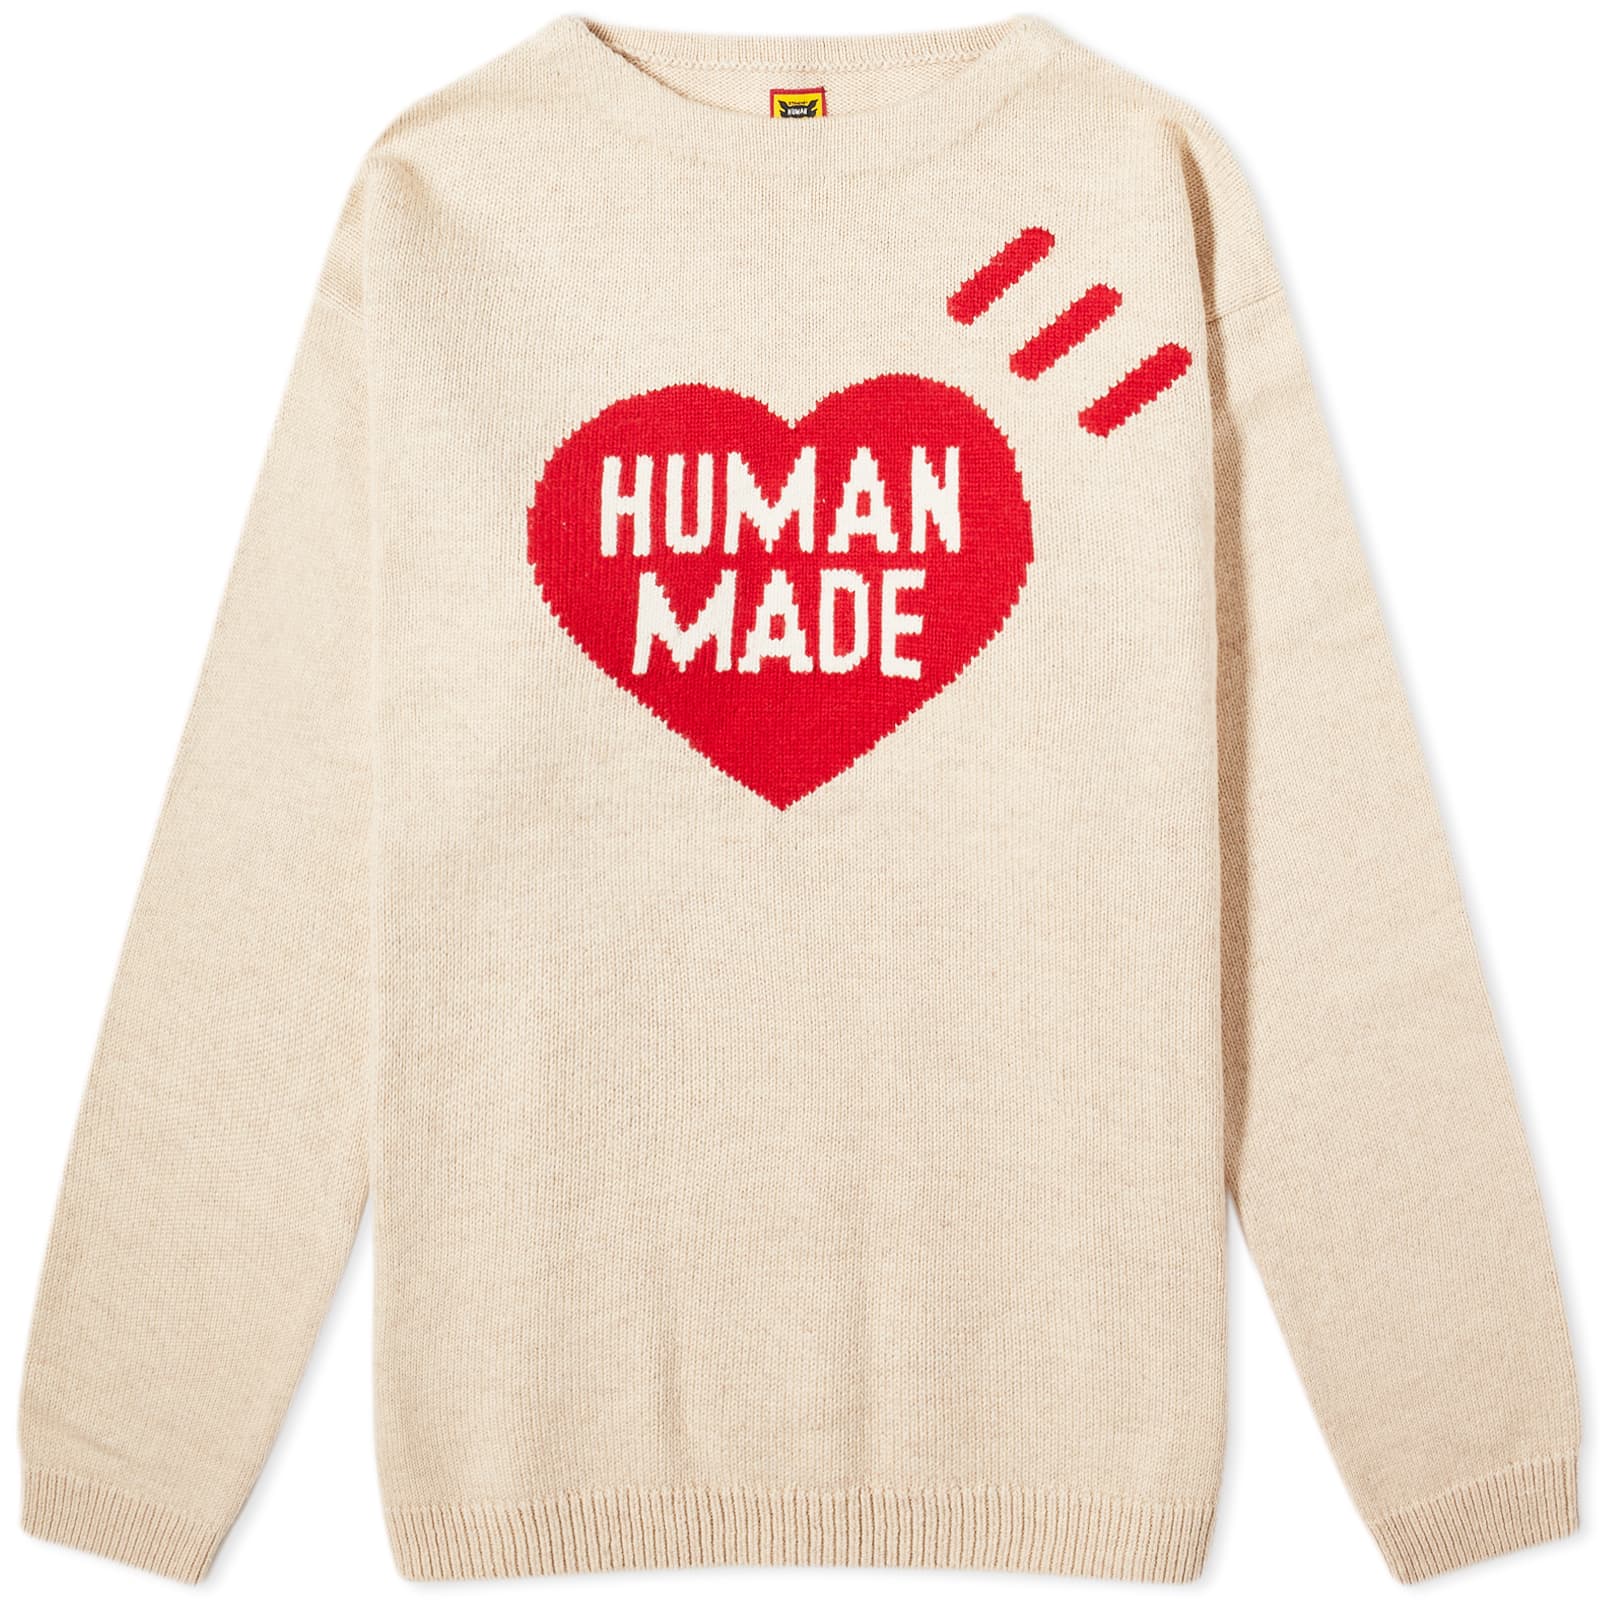 Свитер Human Made Heart Knit, бежевый кепка human made размер onesize бежевый